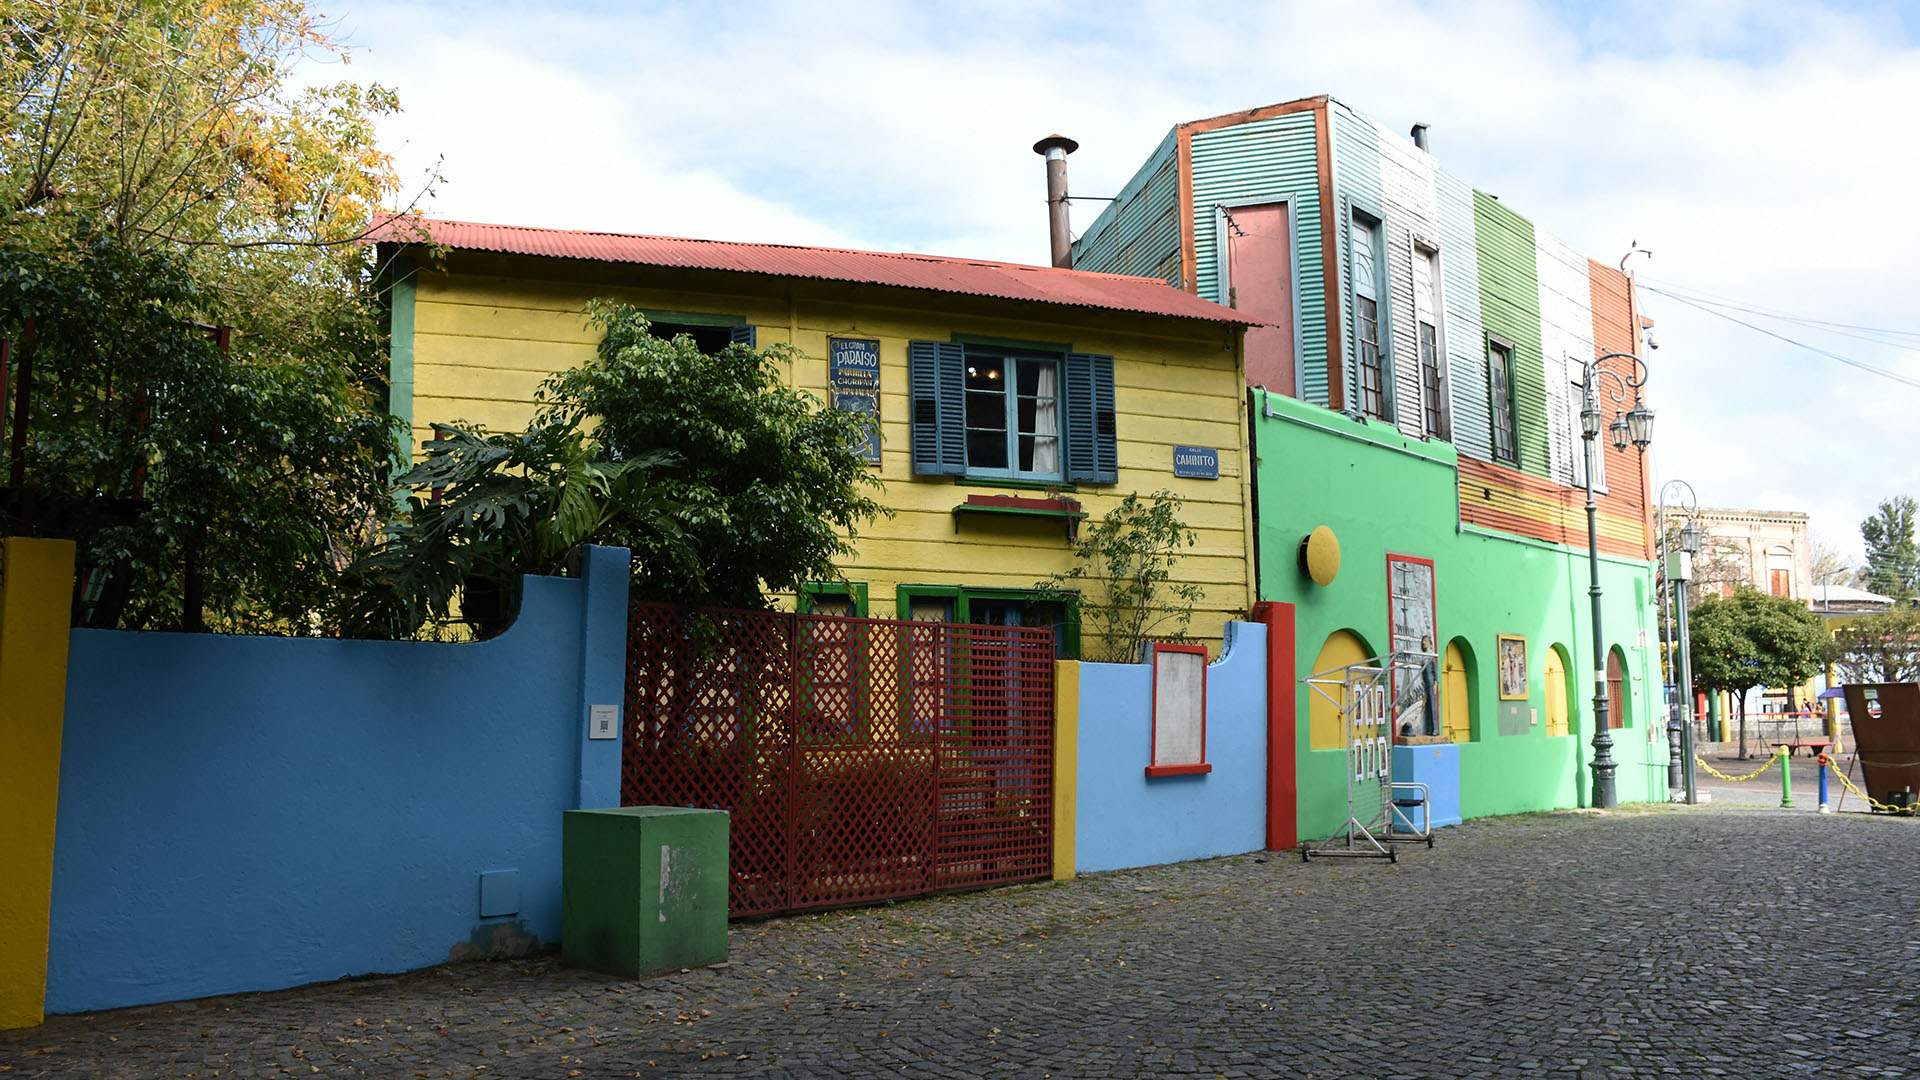 Caminito, en el barrio de La Boca, uno de los emblemas de la ciudad.